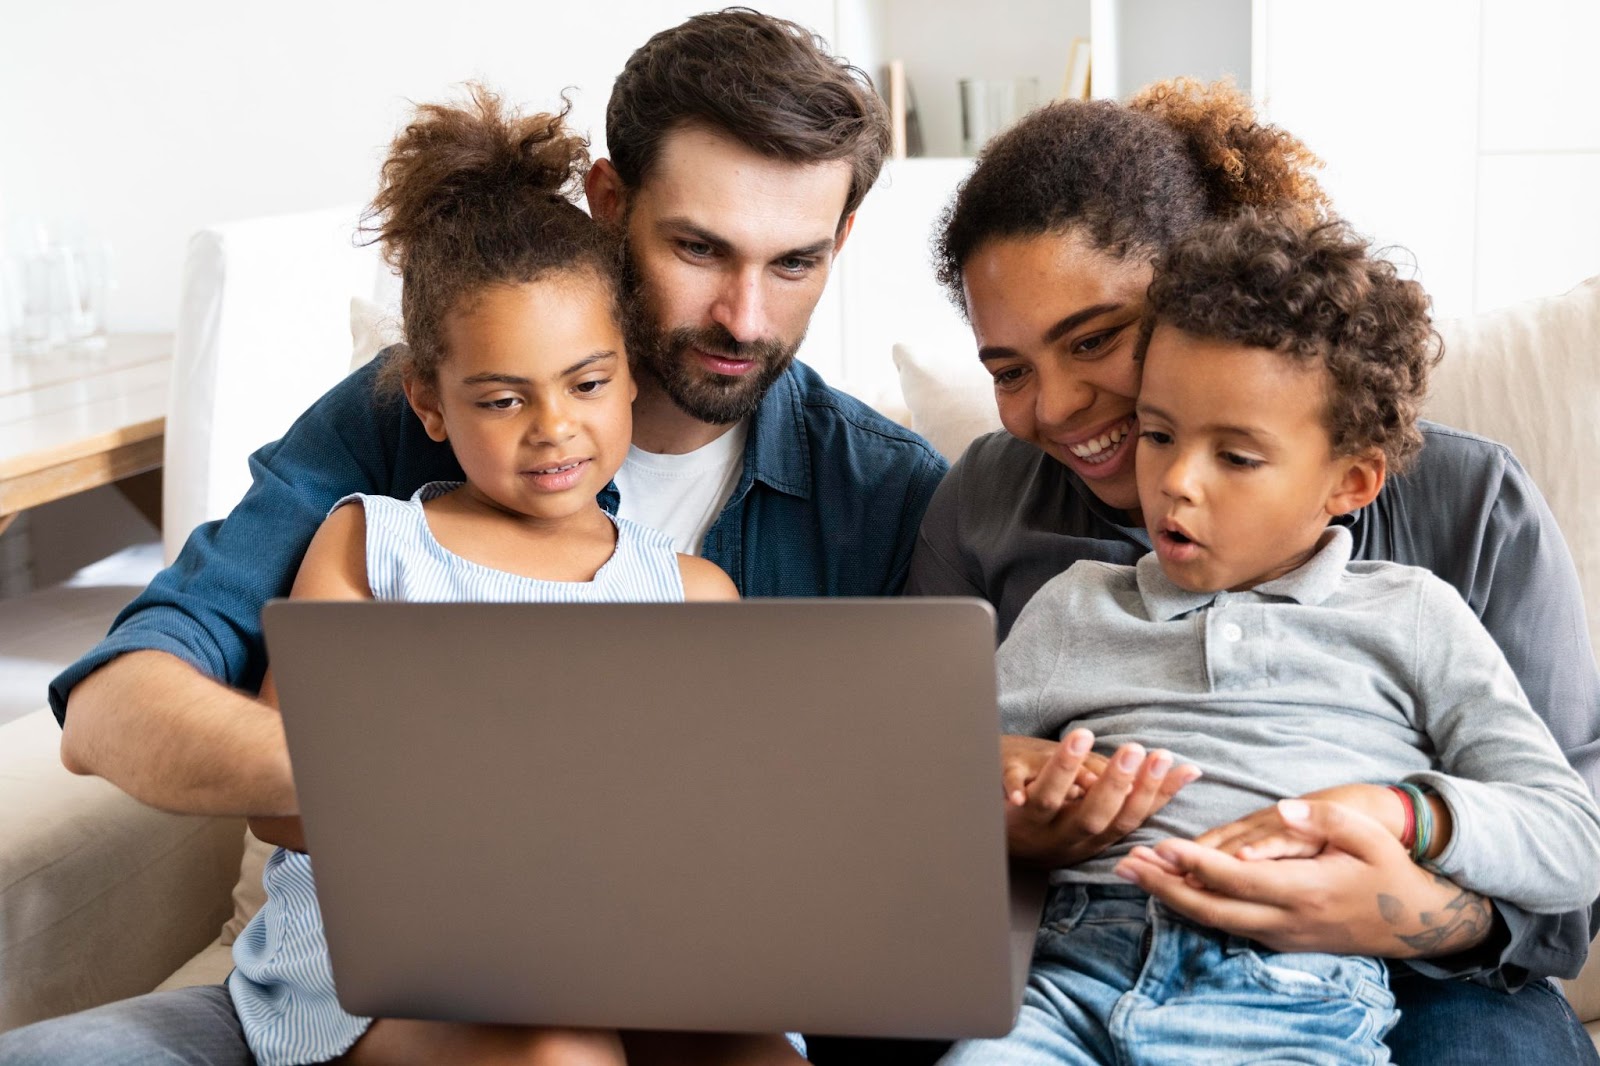 Imagem de uma família olhando a tela de um notebook. Há um homem e uma mulher sentados em um sofá e, em seus colos, há duas crianças pequenas. Os adultos sorriem.